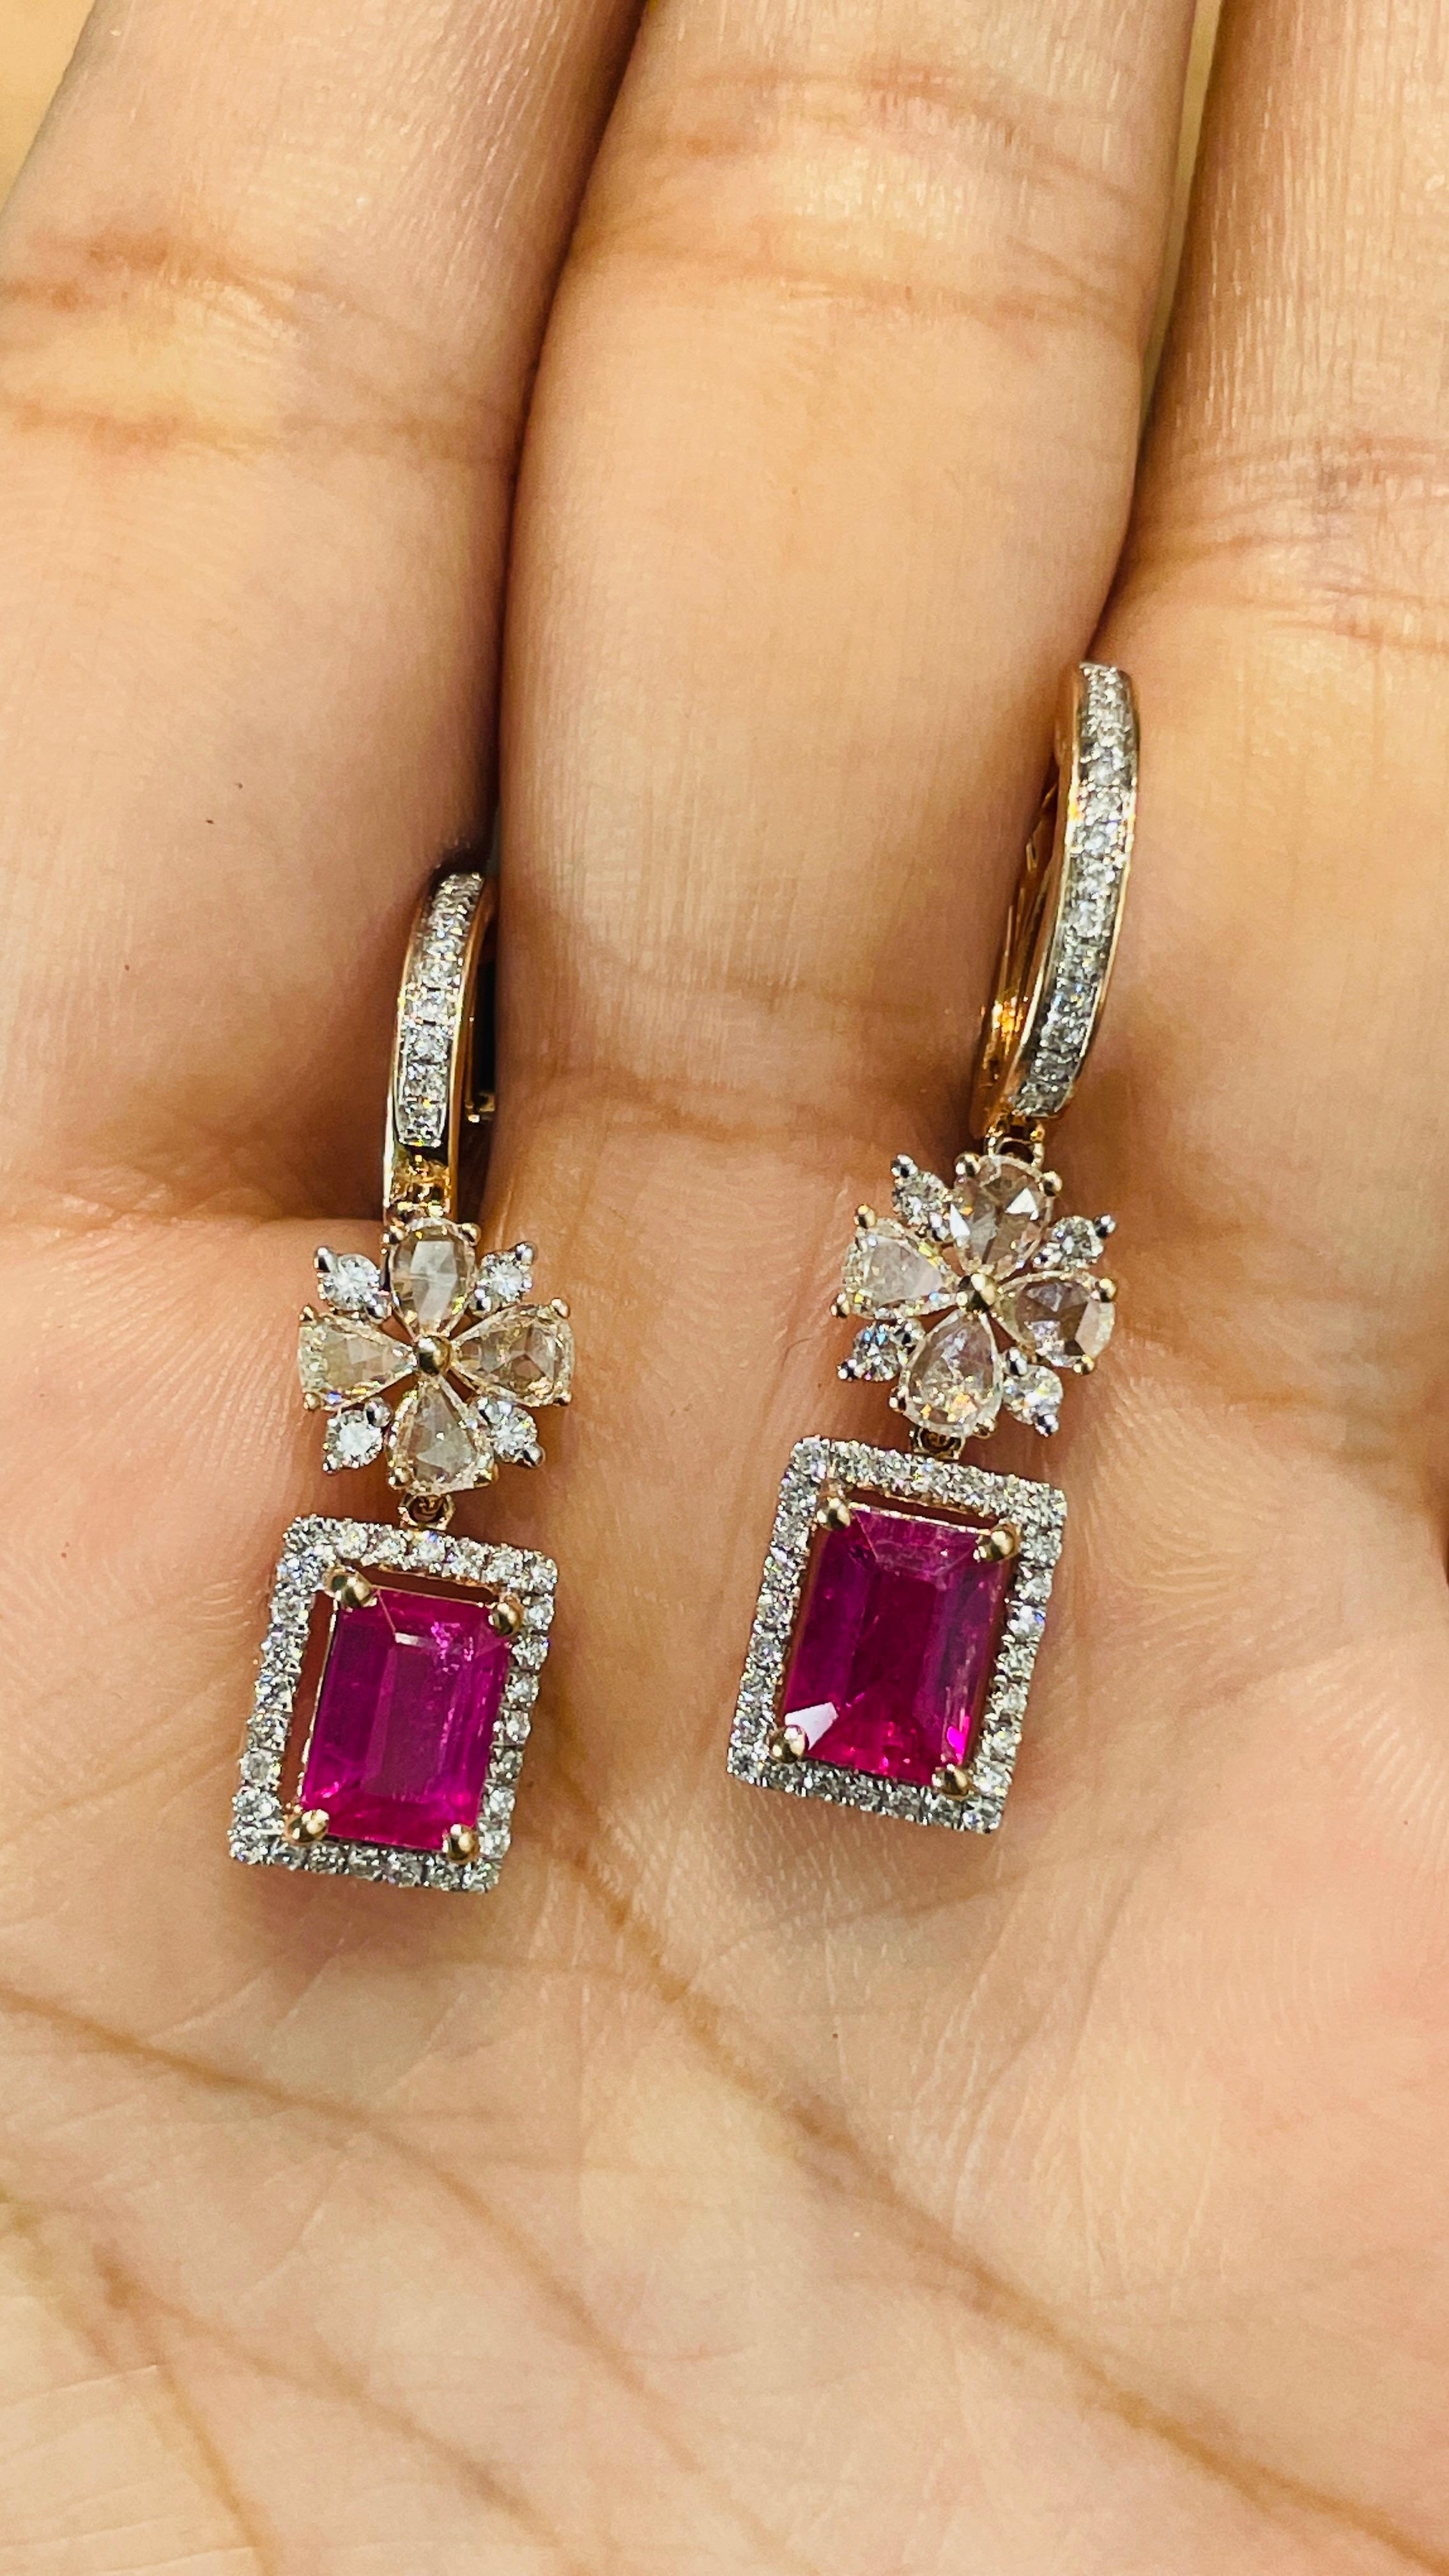 Rubin- und Diamant-Ohrringe, die Ihren Look unterstreichen. Diese Ohrringe mit achteckig geschliffenem Edelstein sorgen für einen funkelnden, luxuriösen Look.
Wenn Sie sich für einzigartige Stile begeistern, ist dieses Schmuckstück genau das